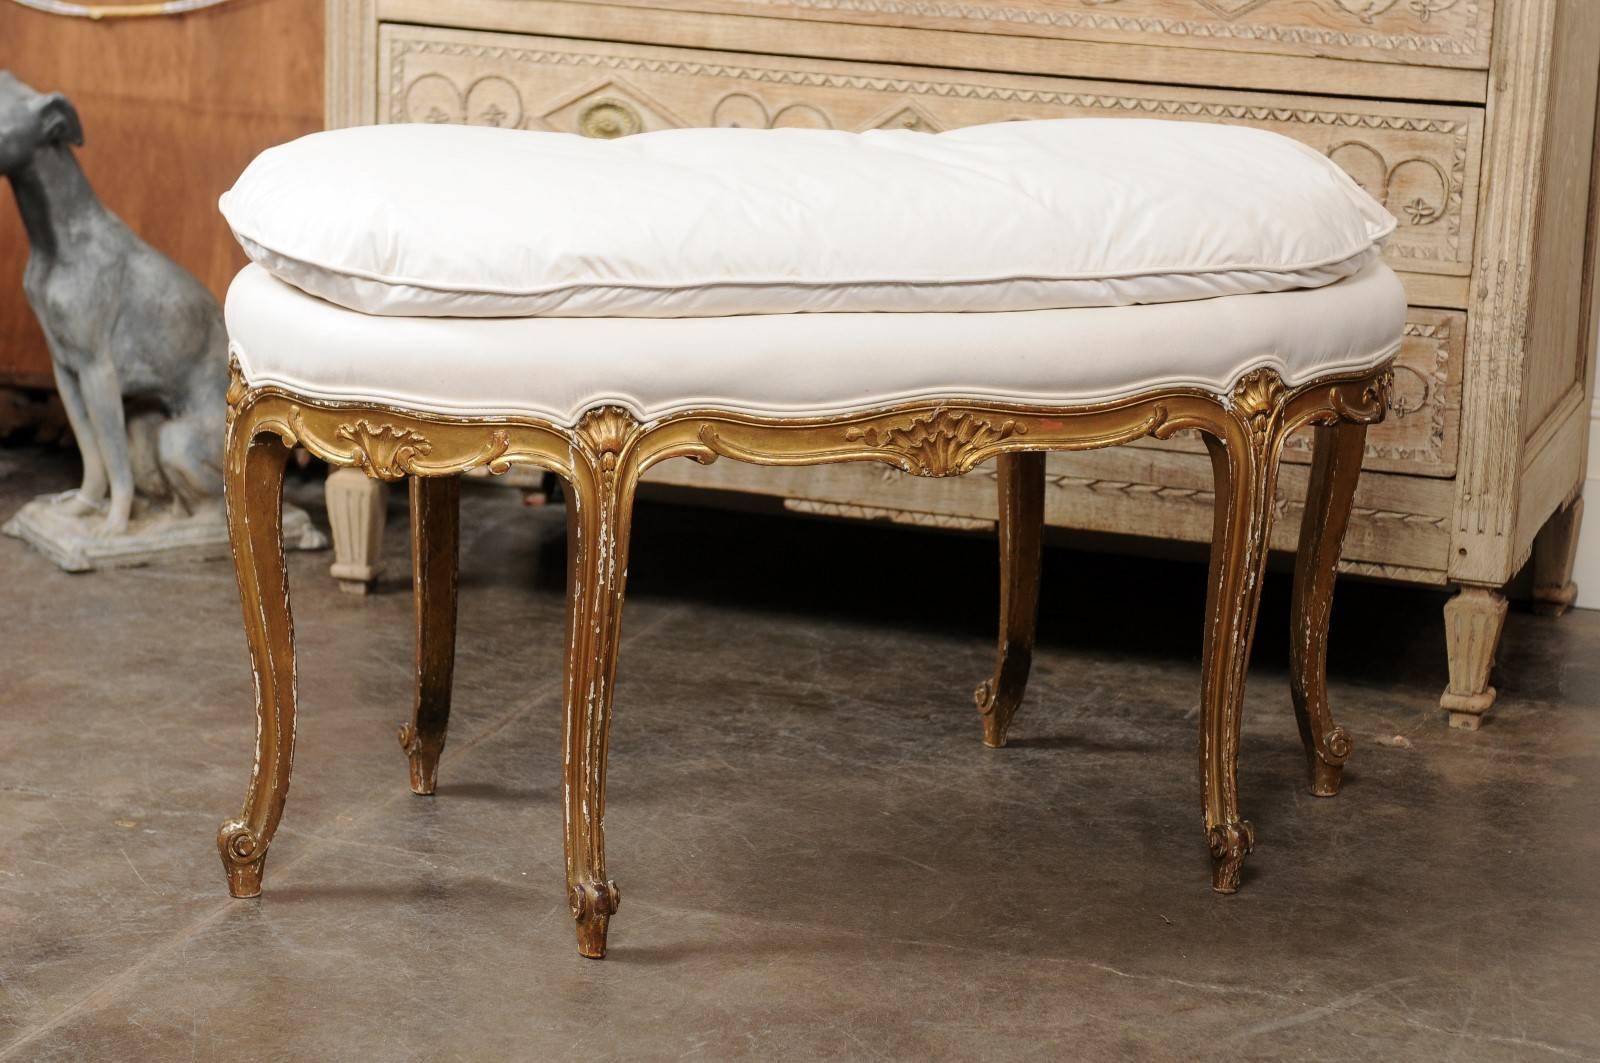 Cet exquis banc français de style Louis XV, datant du début du 20e siècle, présente une assise ovale tapissée de mousseline lisse avec un coussin fait sur mesure sur un beau corps en bois doré. La jupe galbée est délicatement décorée de motifs de